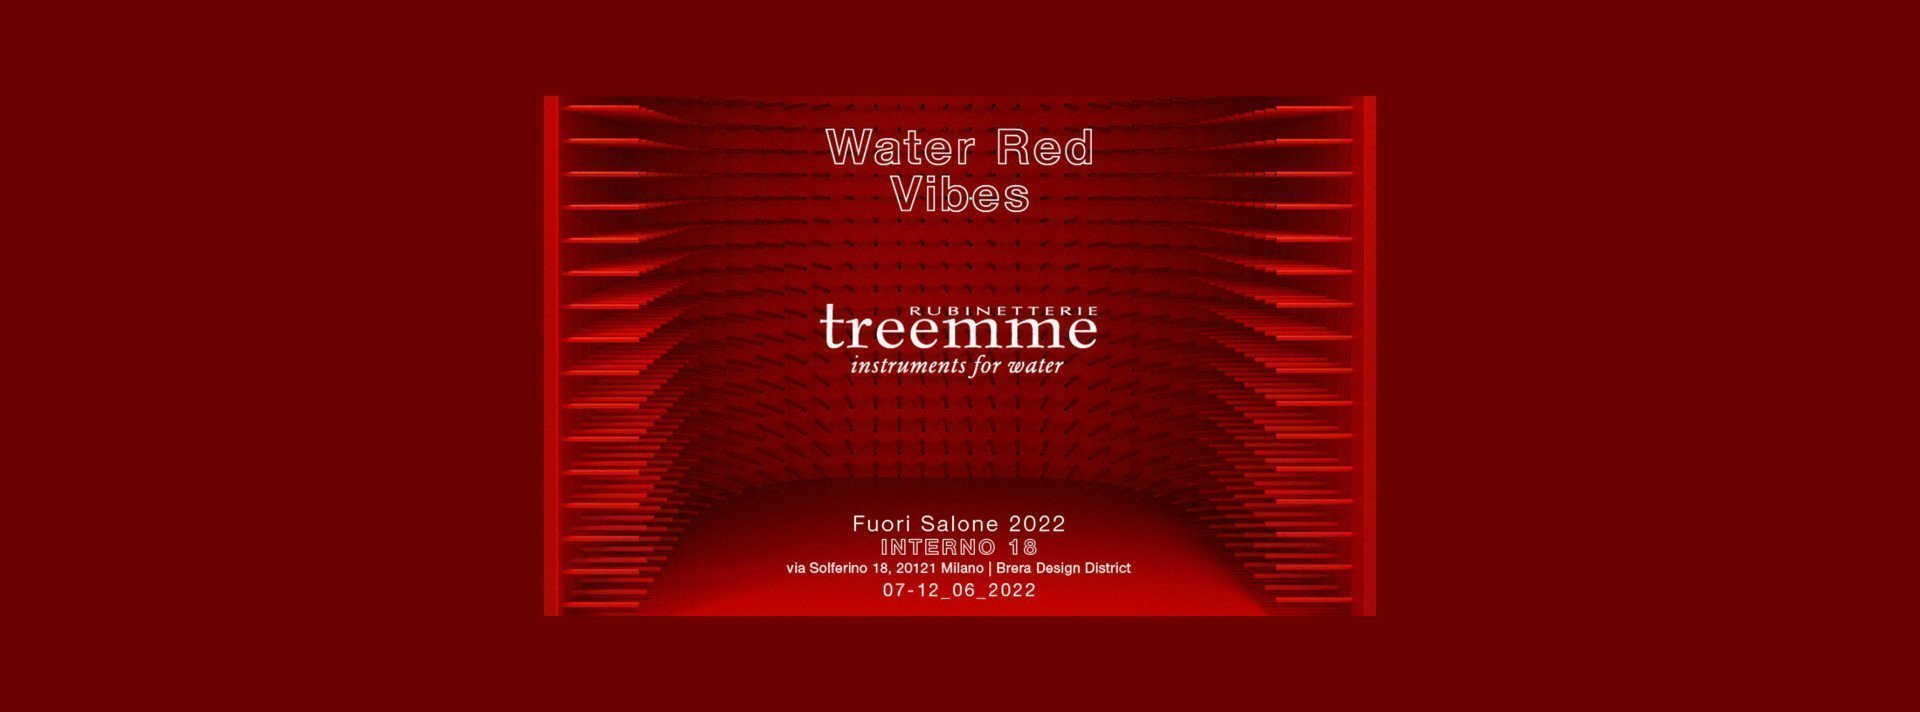 Water Red Vibes: die Veranstaltung von Rubinetterie Treemme auf der Mailänder Designwoche 2022